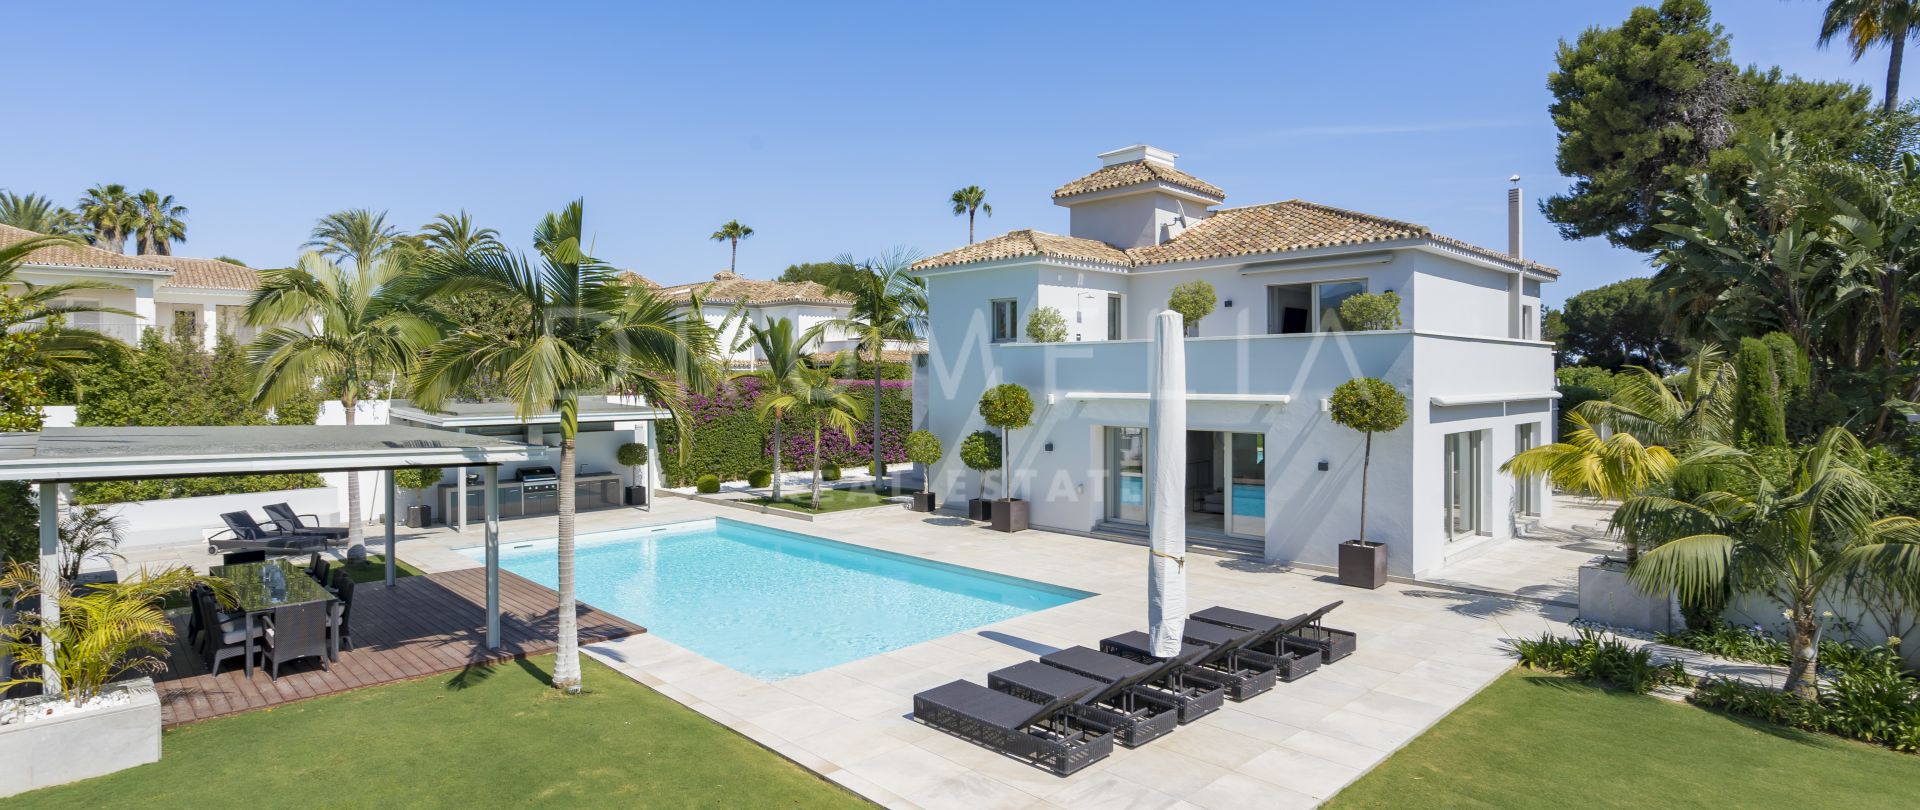 Elegante villa de lujo moderna reformada junto a la playa con casa de invitados en El Paraíso Barronal, Estepona